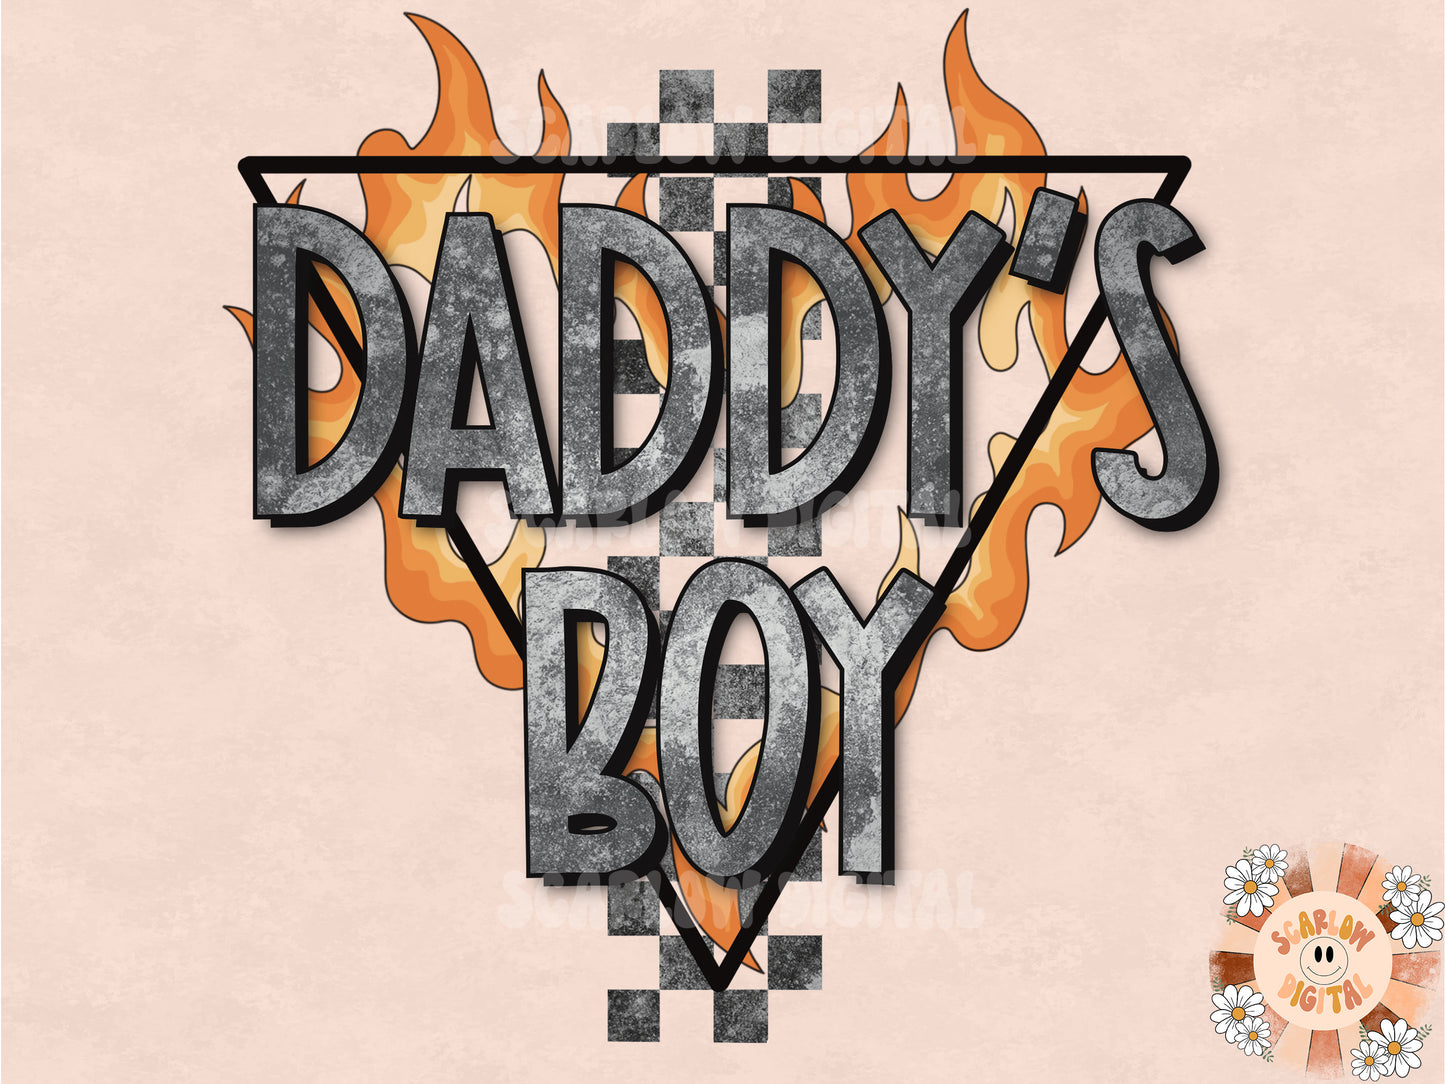 Daddys Boy PNG-Skateboard Sublimation Digital Design Download-little boy png, boy sublimation, rocker boy png, edgy png, smiling png design